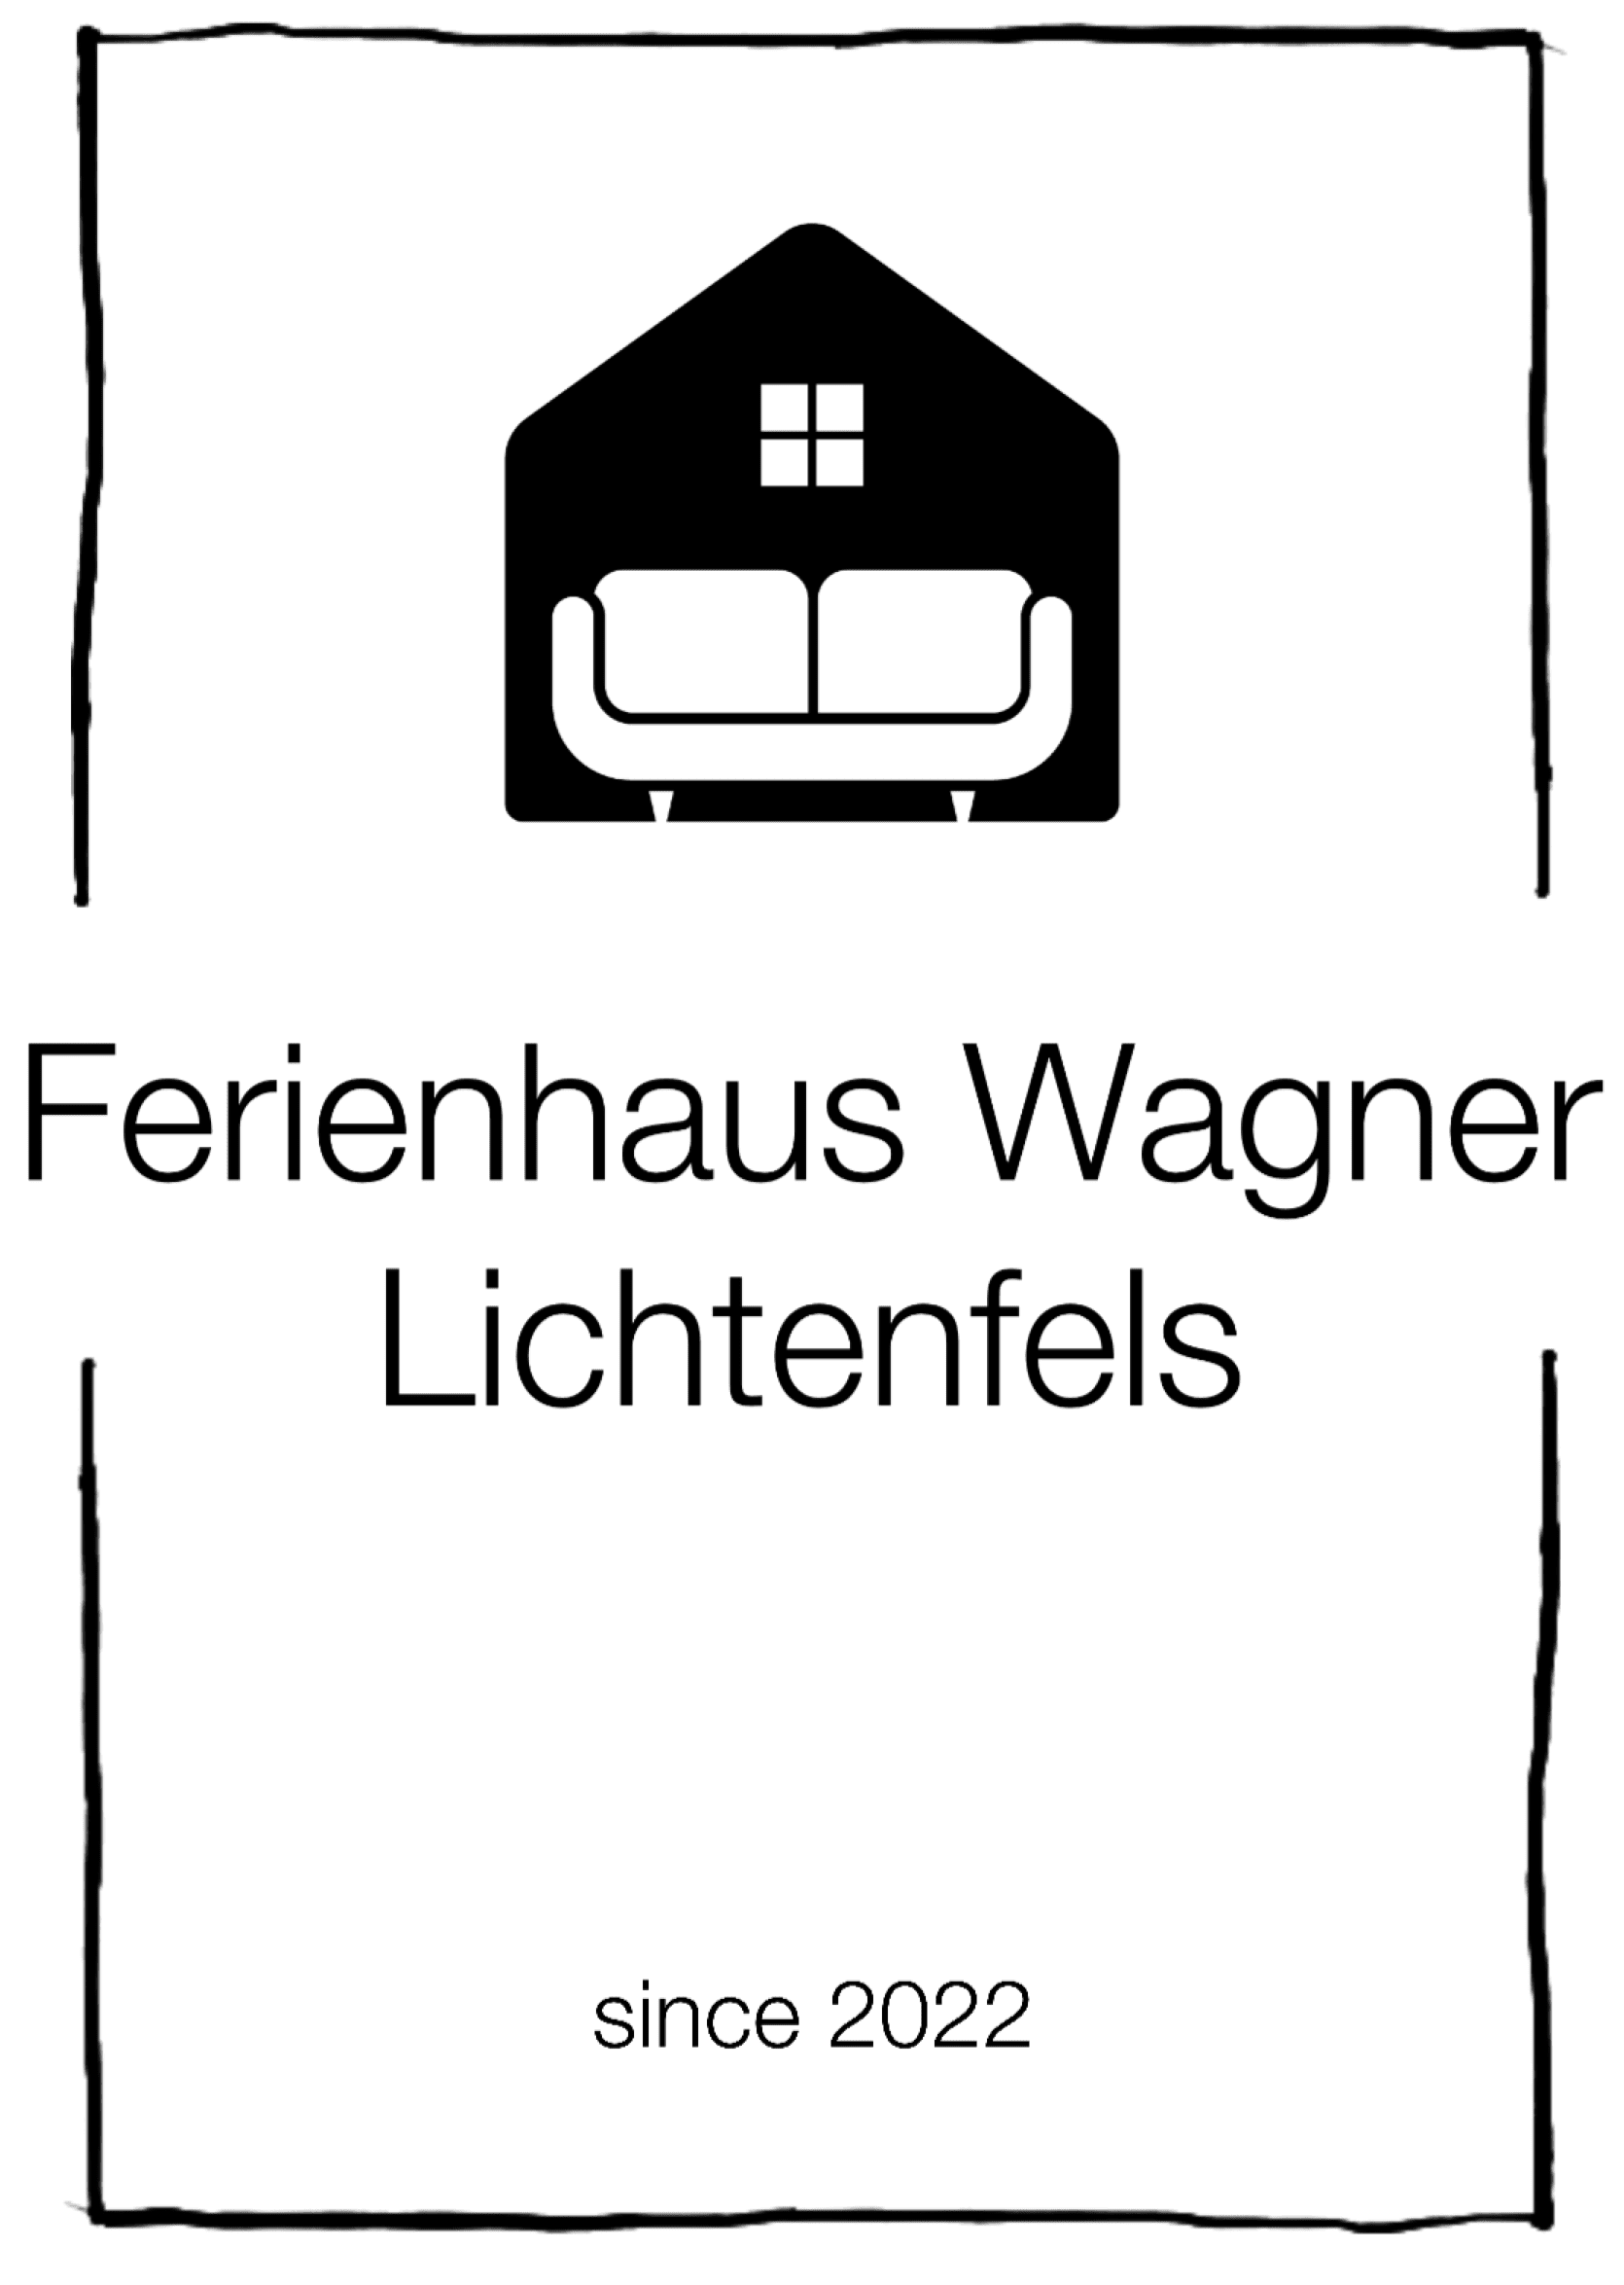 Ferienhaus Wagner